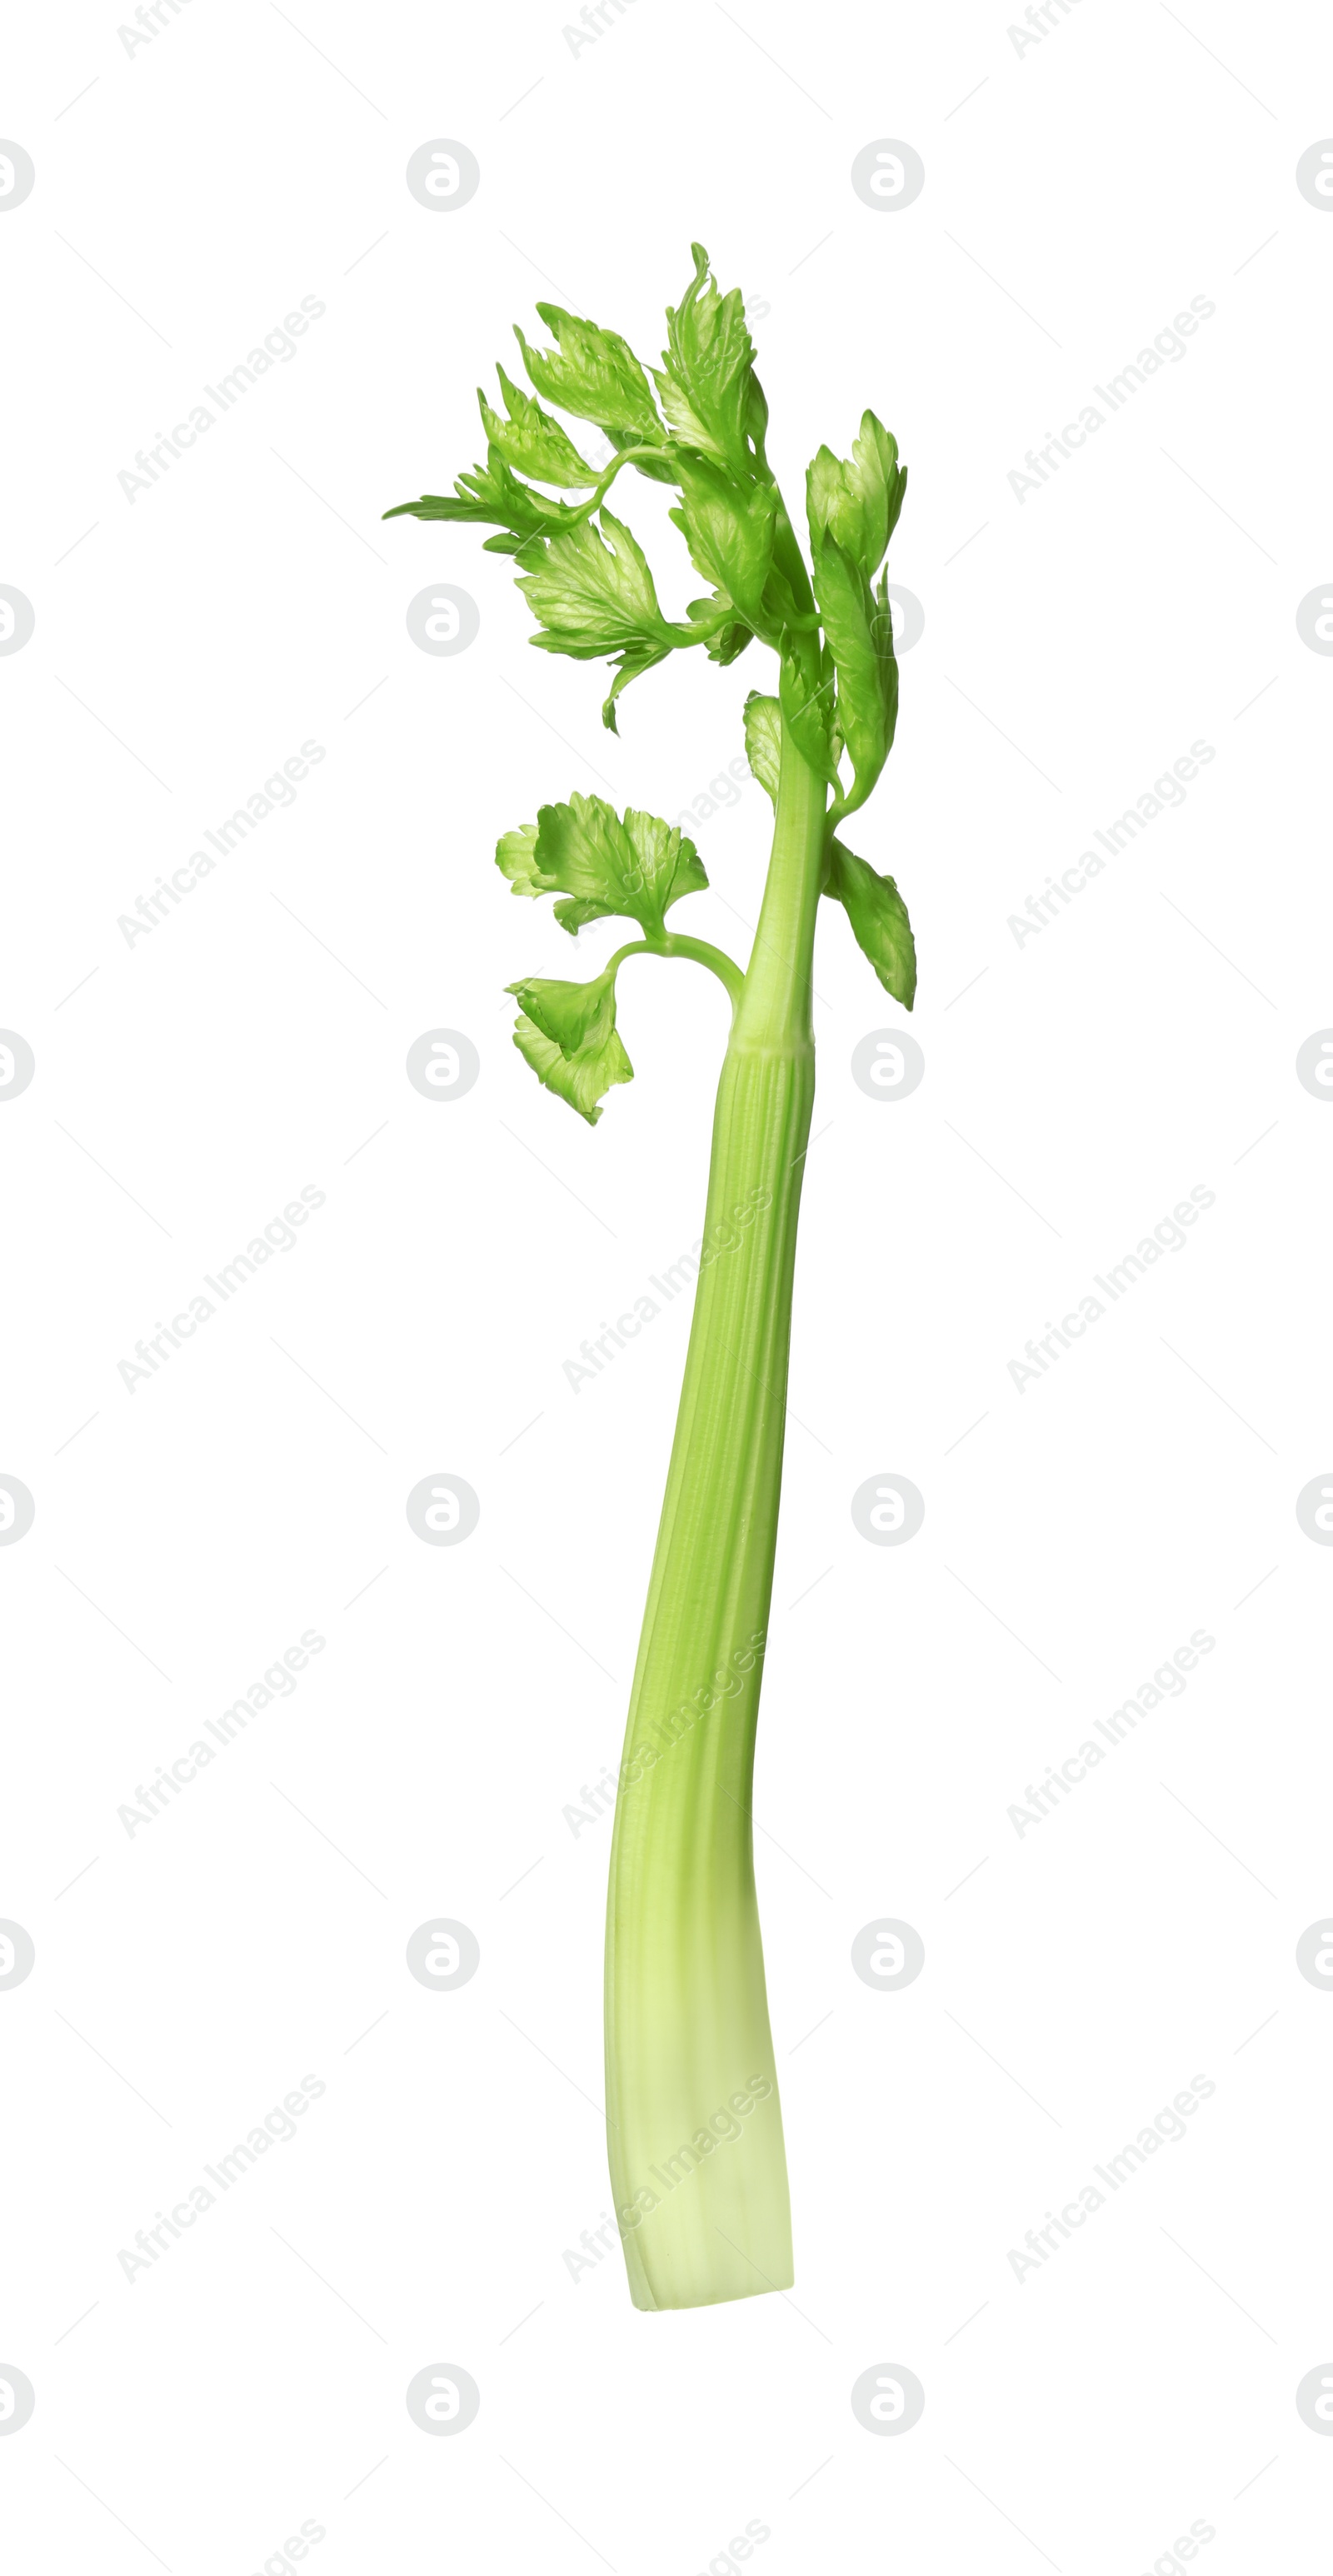 Photo of Fresh stalk of celery isolated on white